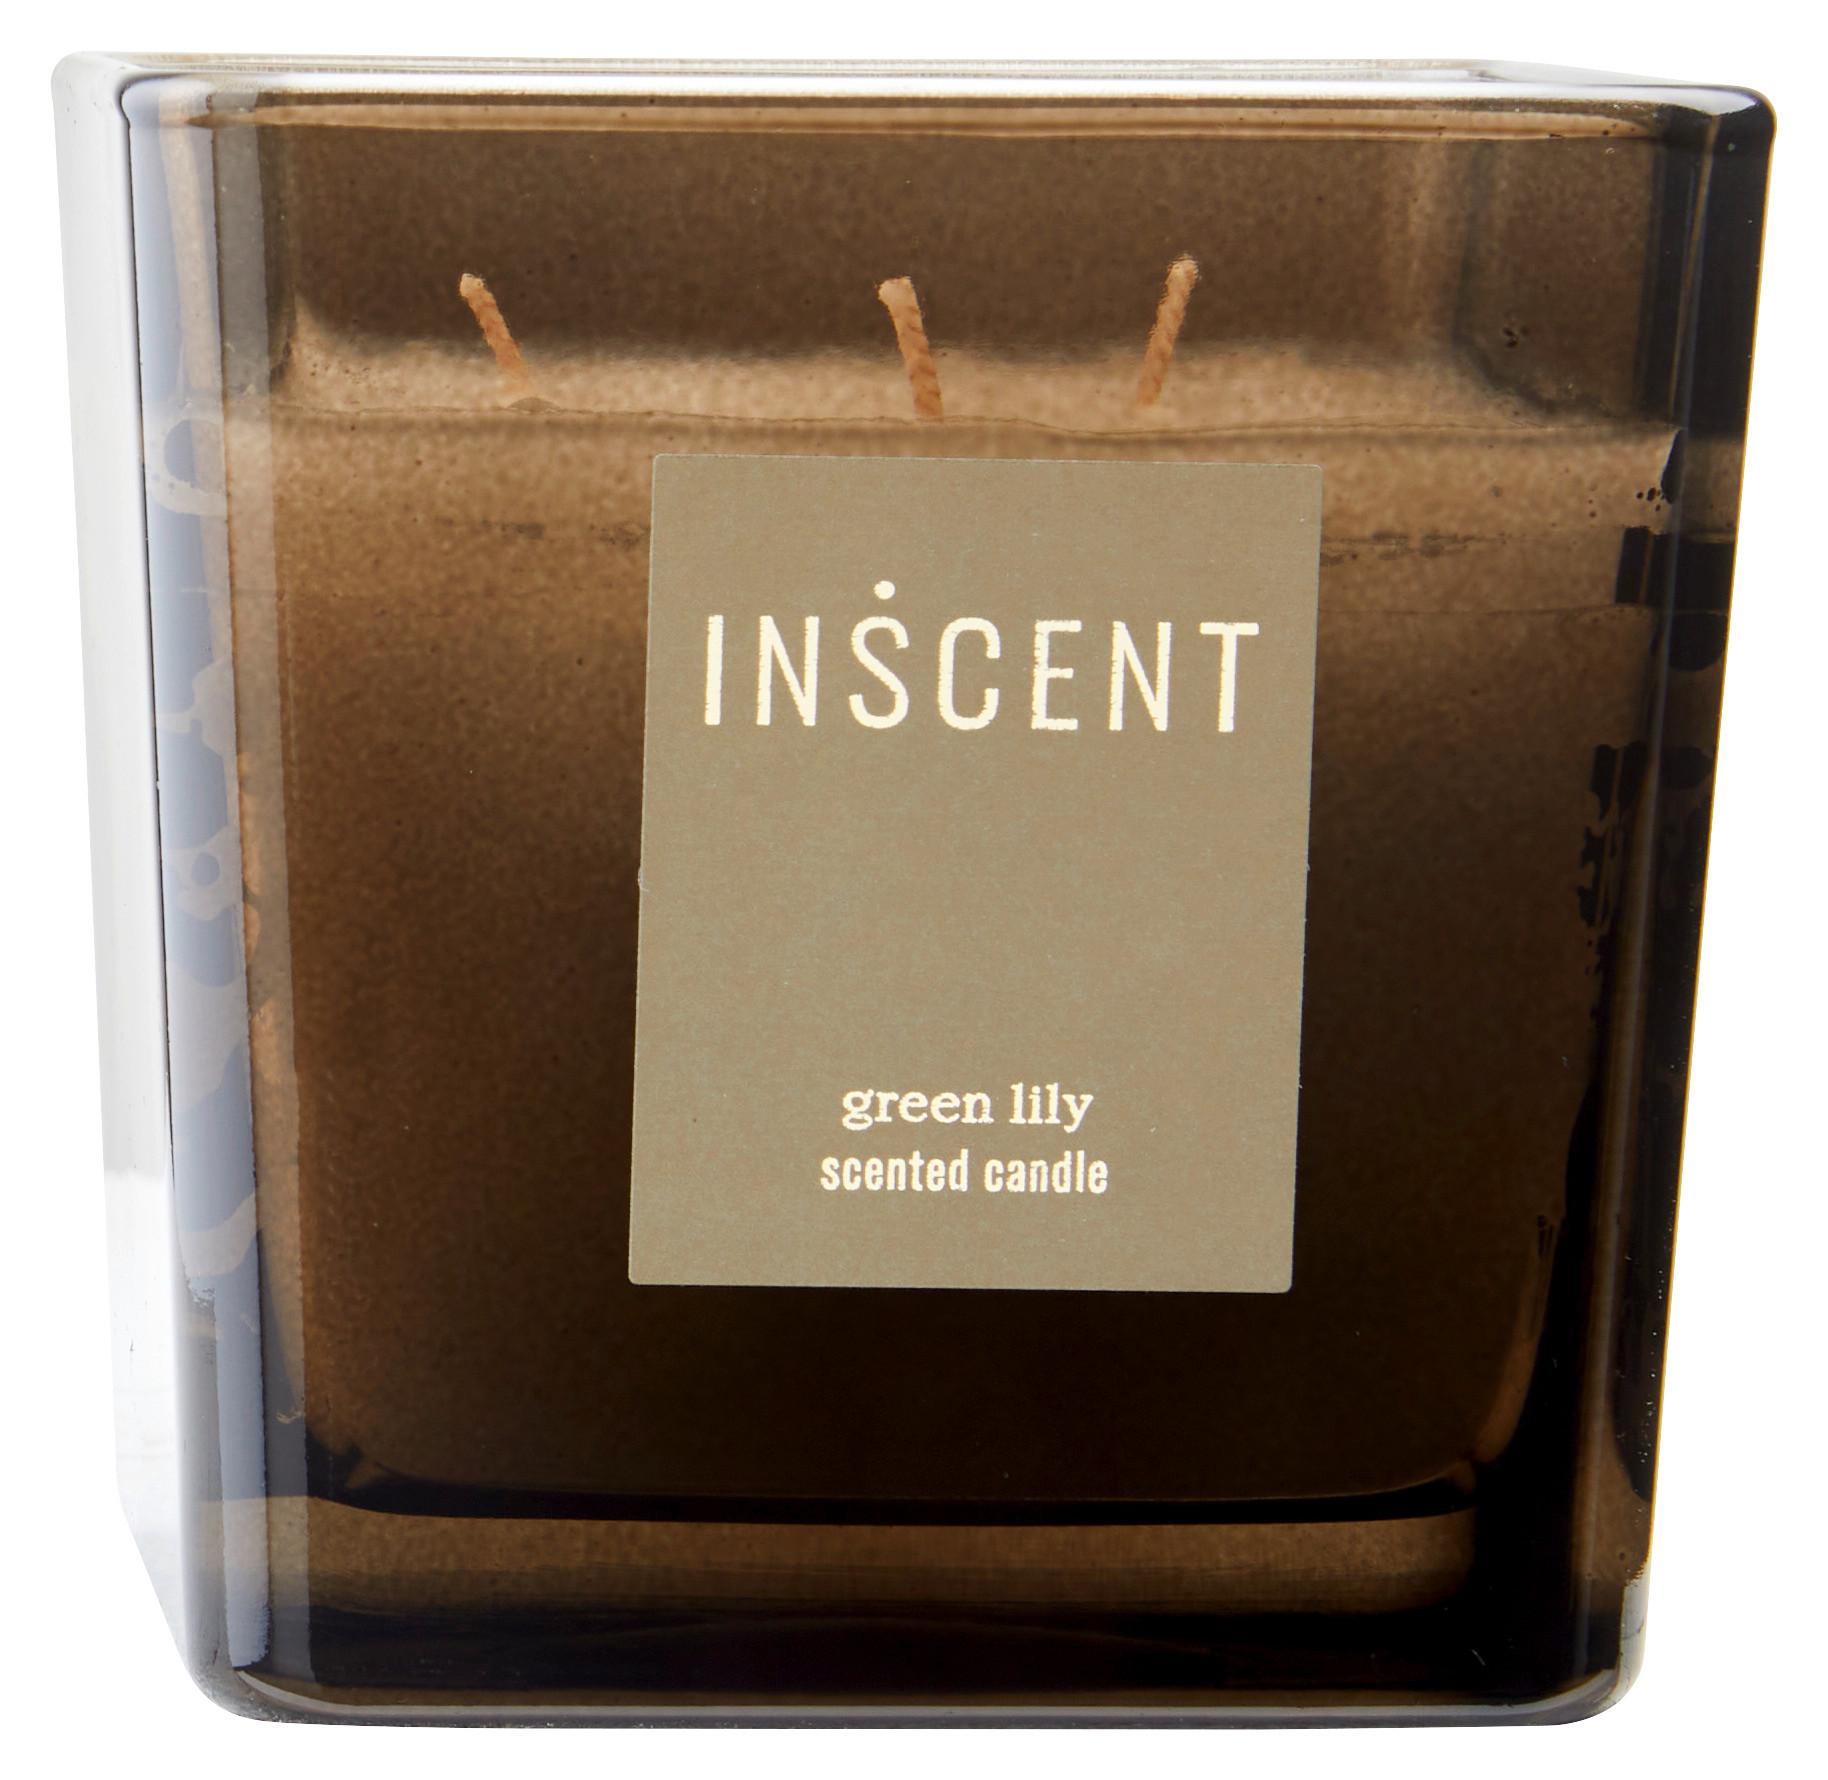 Svíčka Ve Skle Green Lily, 50 H. - bílá/čiré, Design, sklo (10/10/10cm) - Inscent